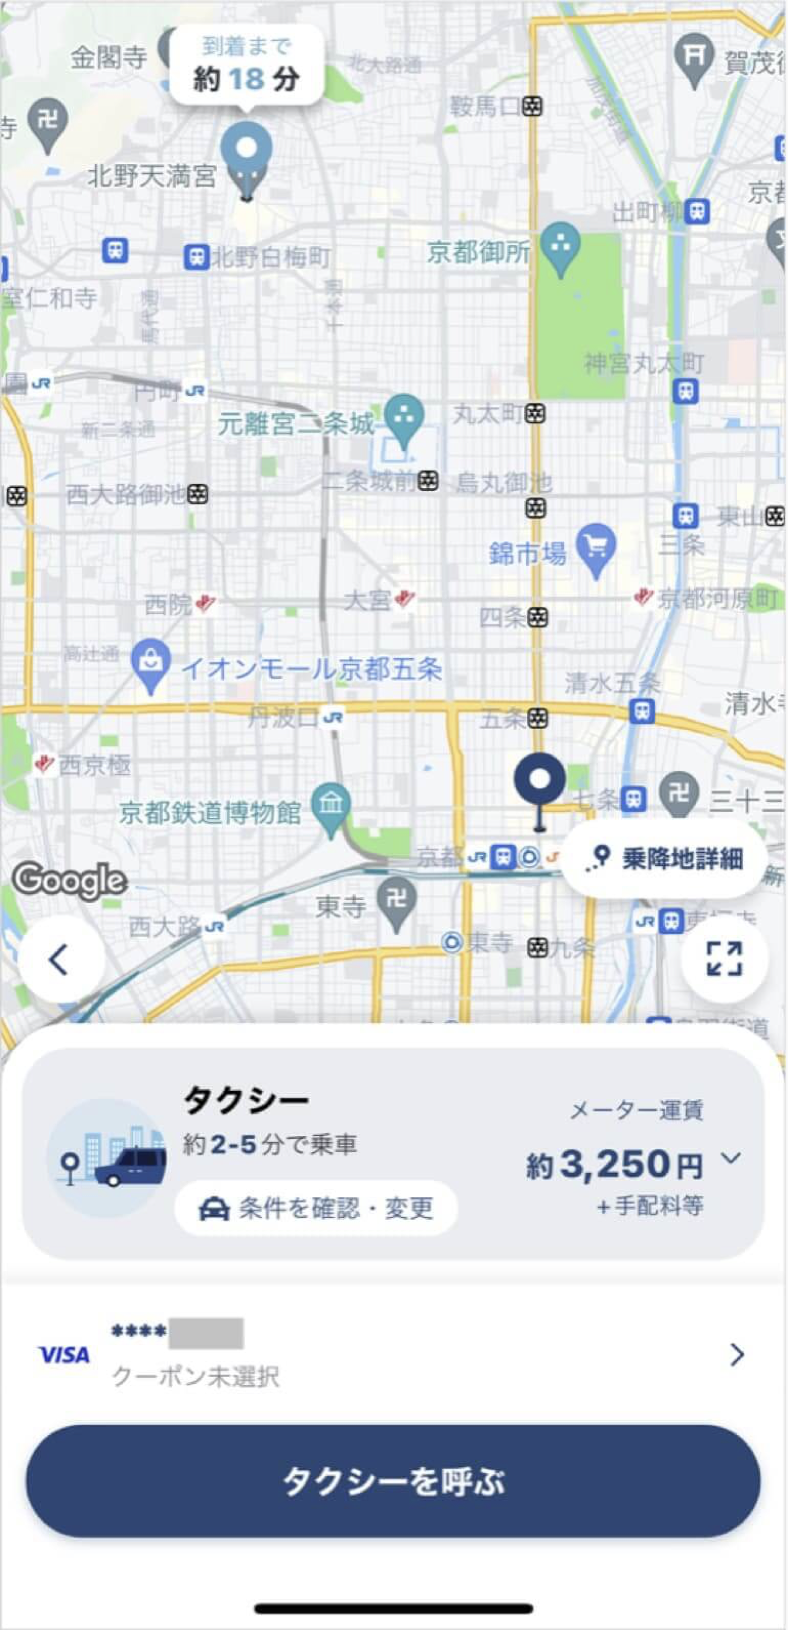 京都駅から北野天満宮までのタクシー料金・所要時間まとめ